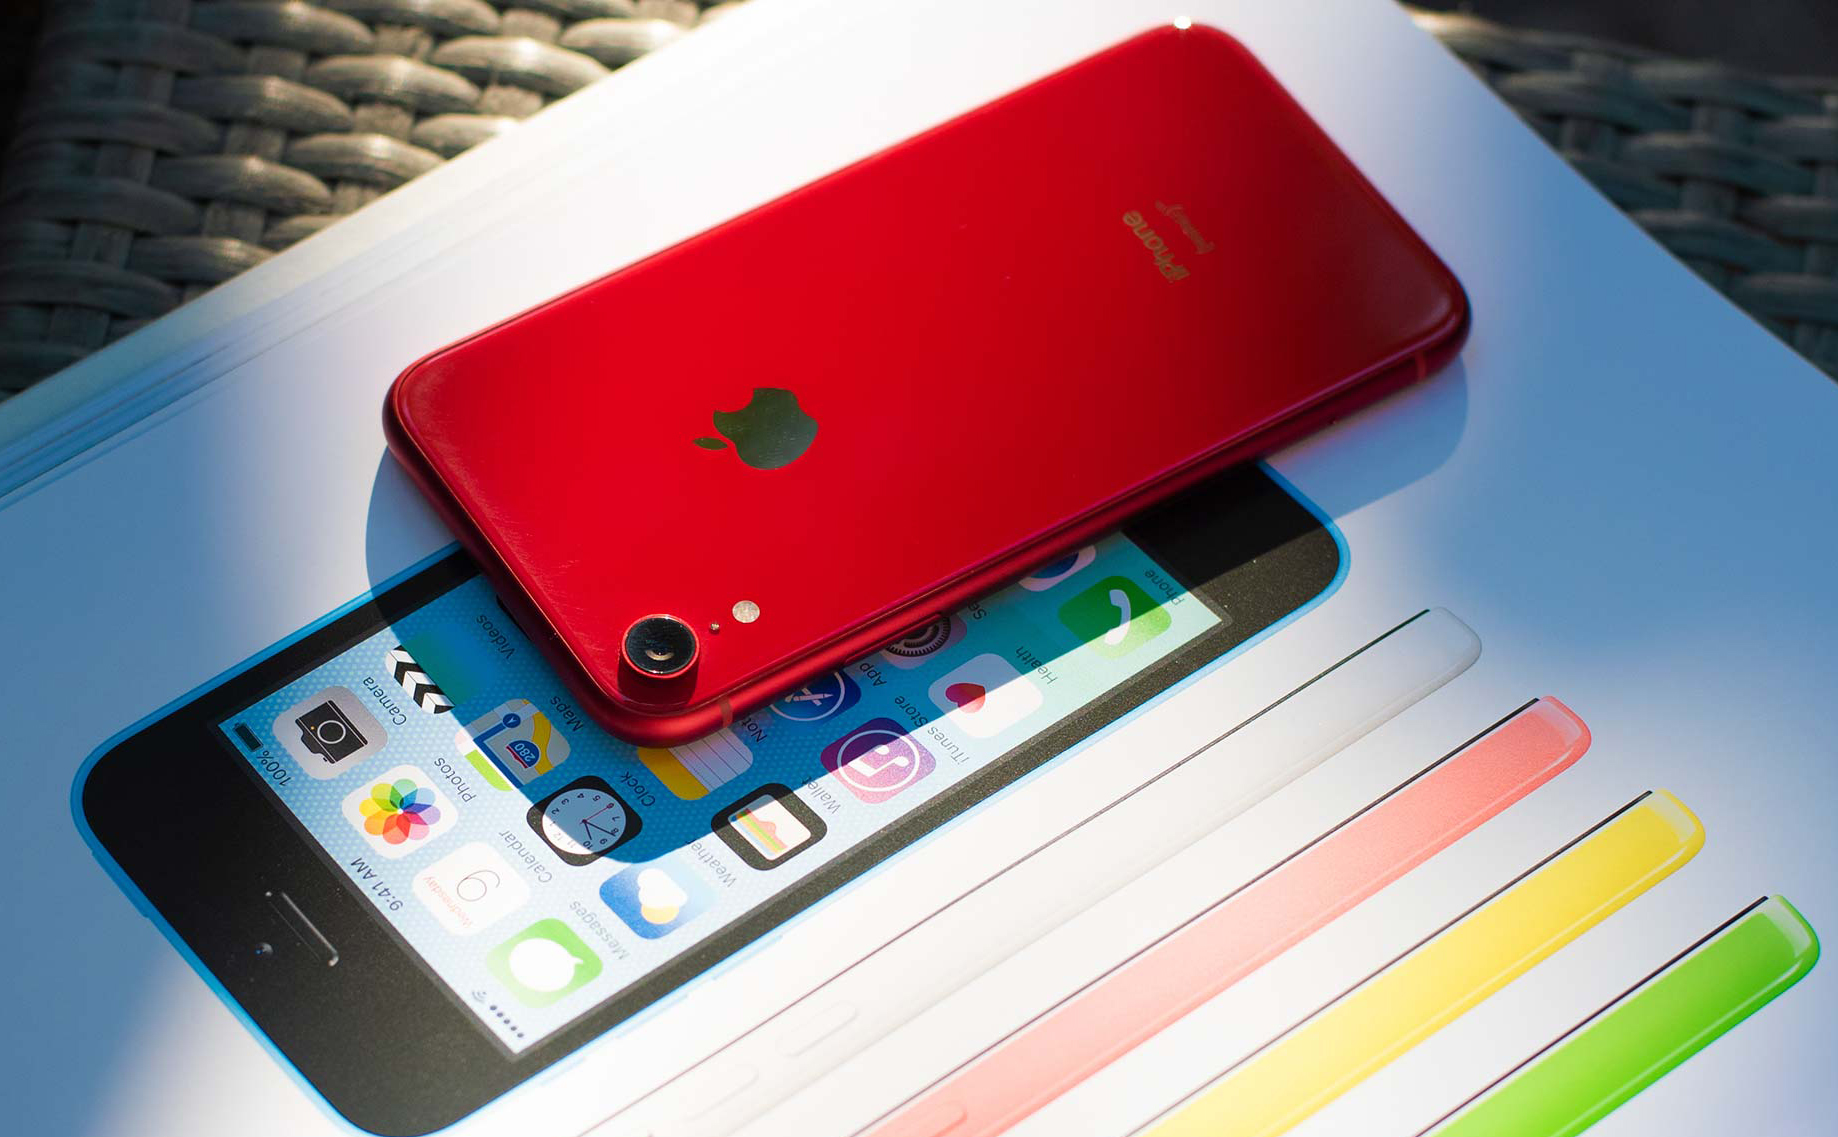 Phó chủ tịch Apple: iPhone XR là sản phẩm bán chạy nhất